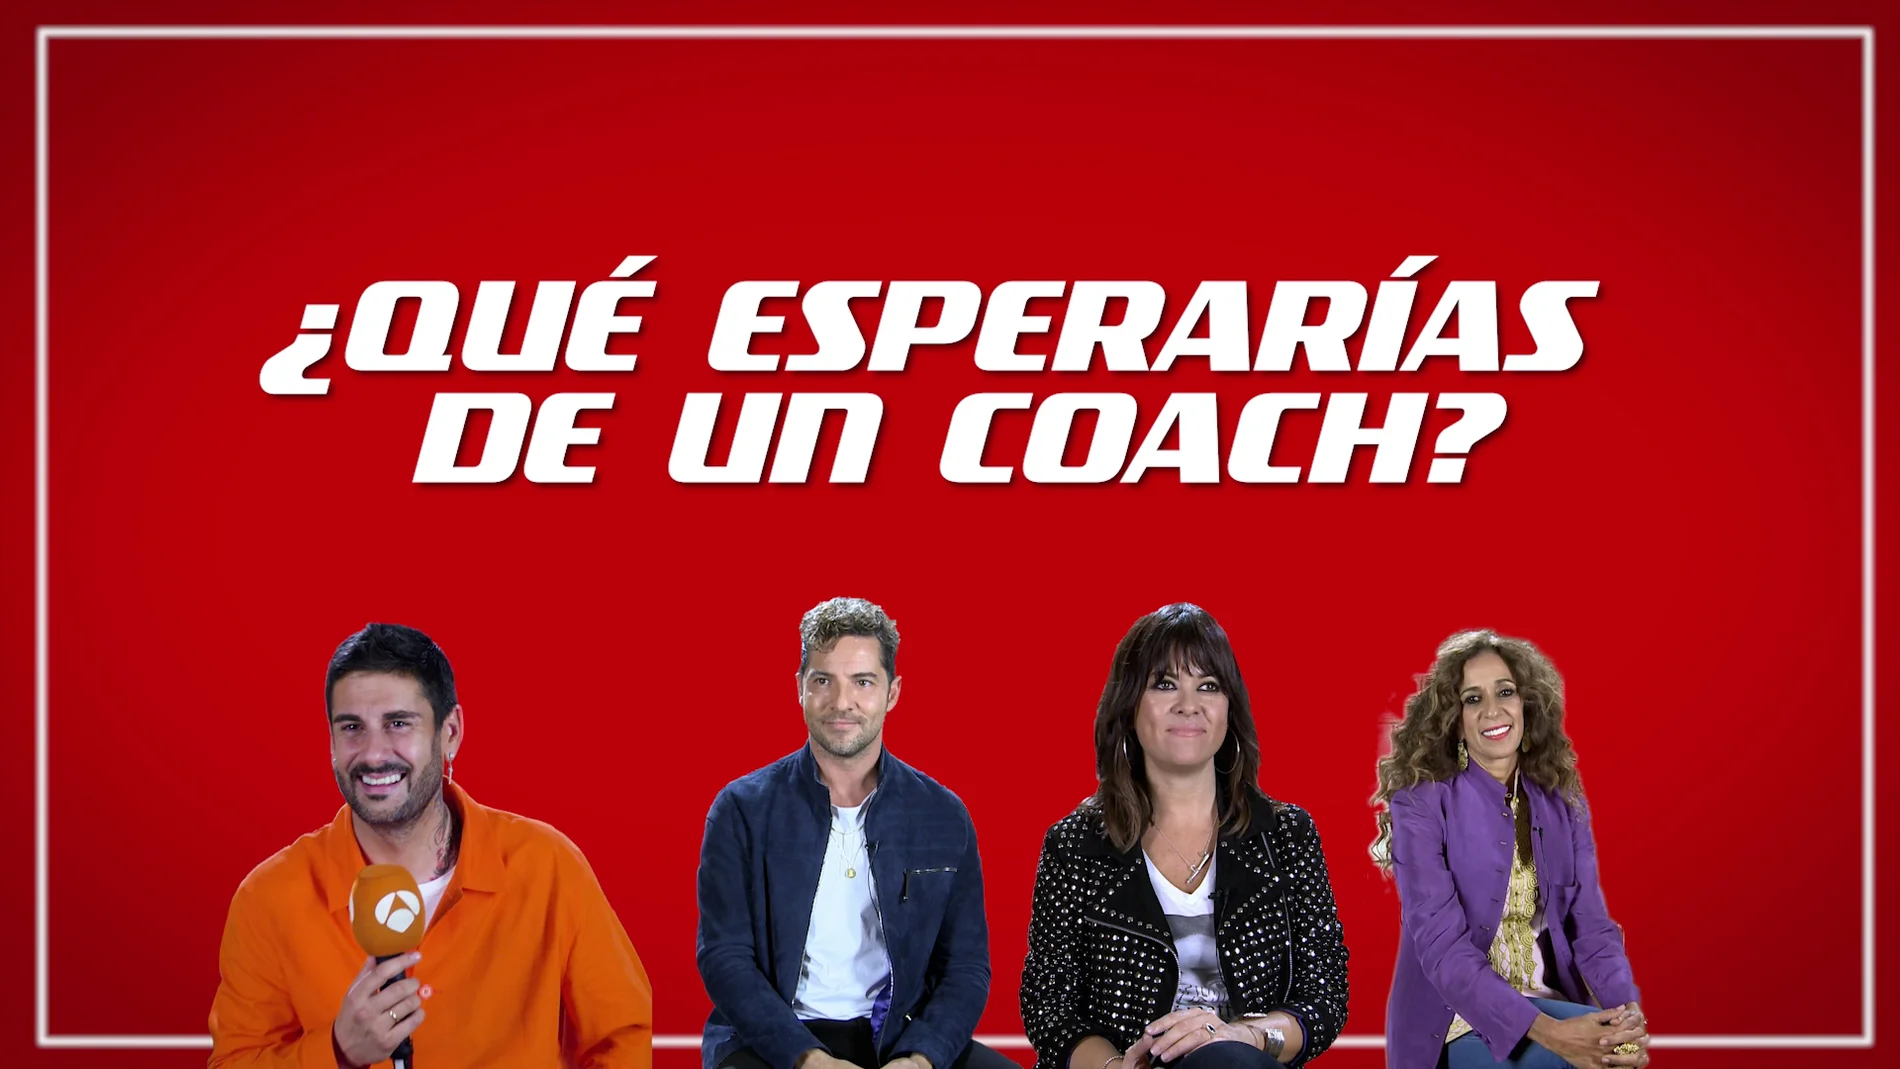 David Bisbal, Vanesa Martín, Rosario y Melendi se imaginan siendo niños de ‘La Voz Kids’: ¿qué buscarían en un coach?